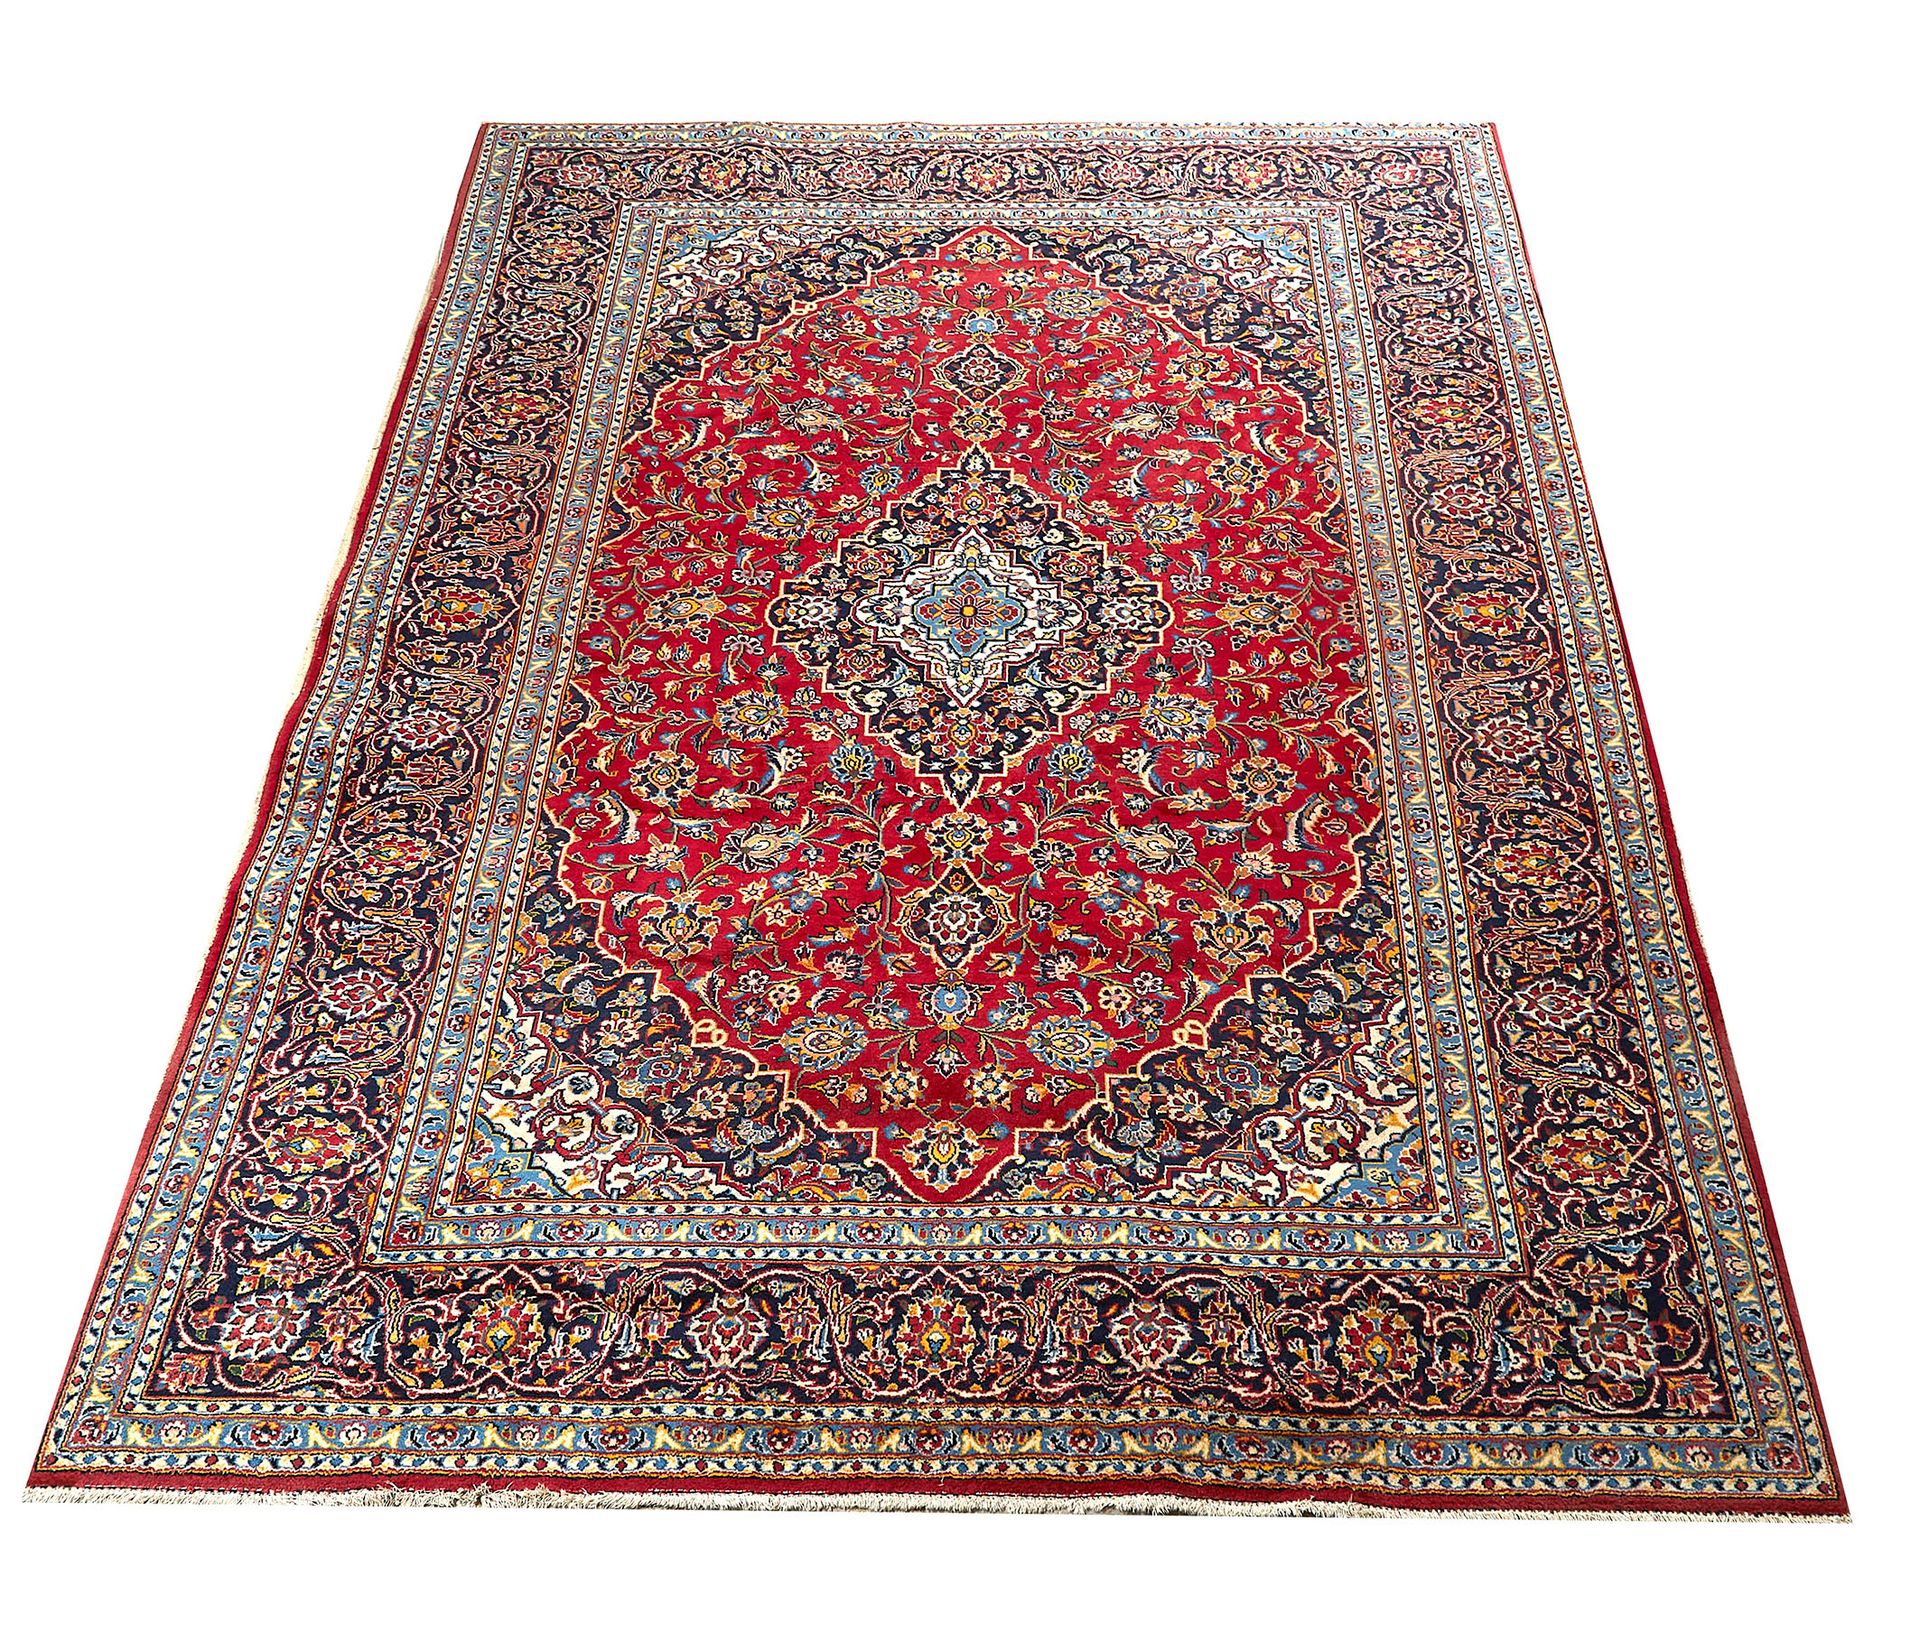 Null 内德贾法巴德（伊朗）。羊毛地毯，蓝色和红色背景上有多色花的装饰。384 x 282.